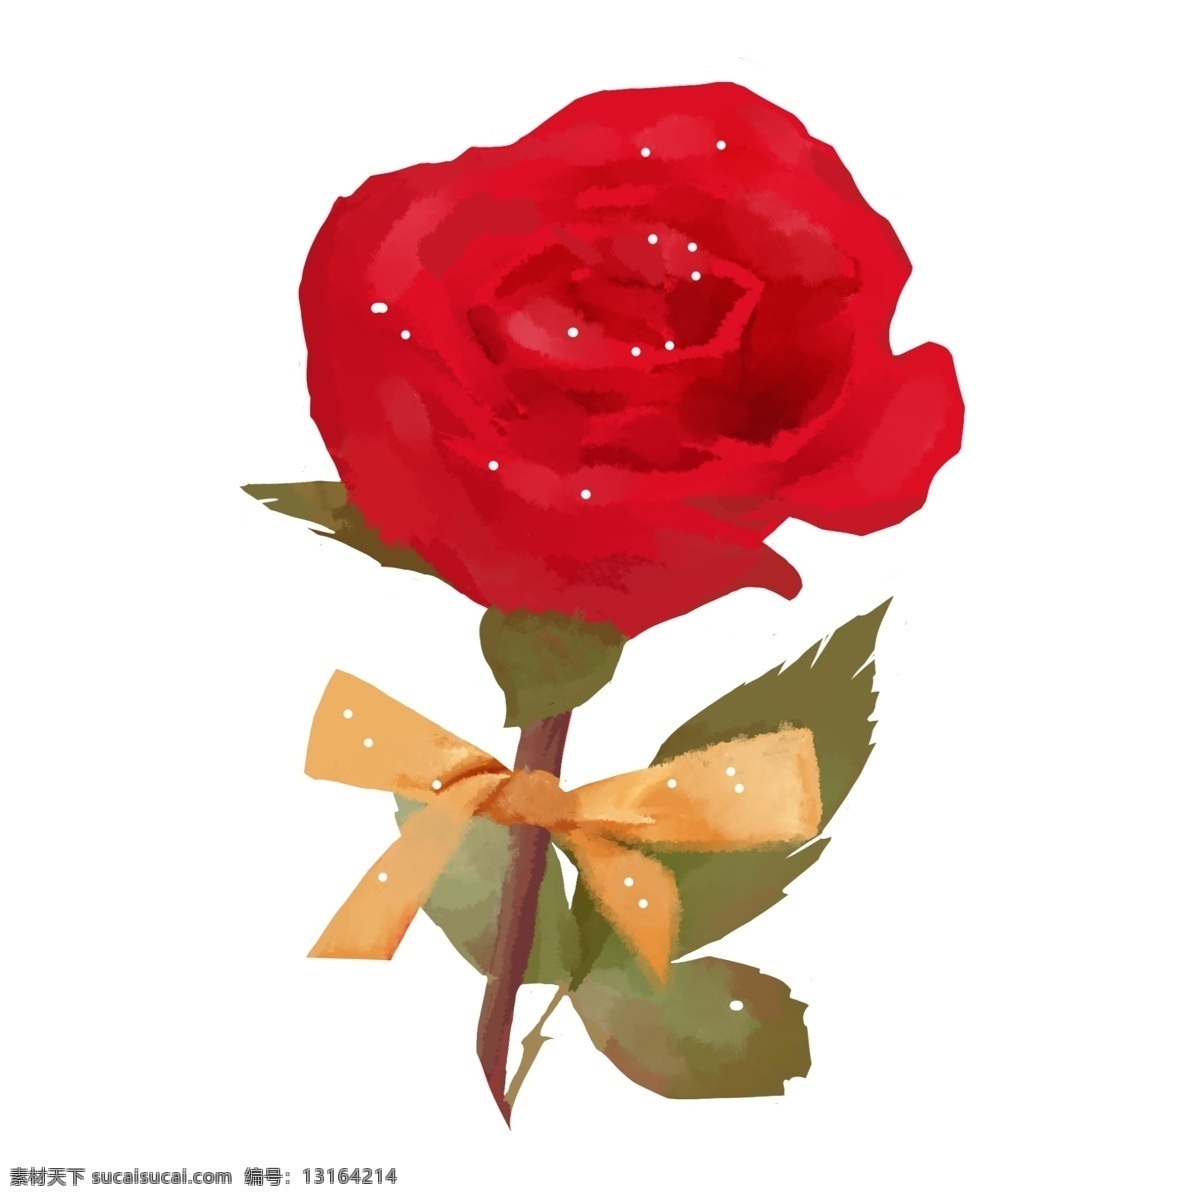 朵 美丽 玫瑰花 插画 鲜花 花朵 花卉 红色玫瑰 红色蝴蝶结 美丽的玫瑰花 鲜艳的玫瑰花 绿色花枝